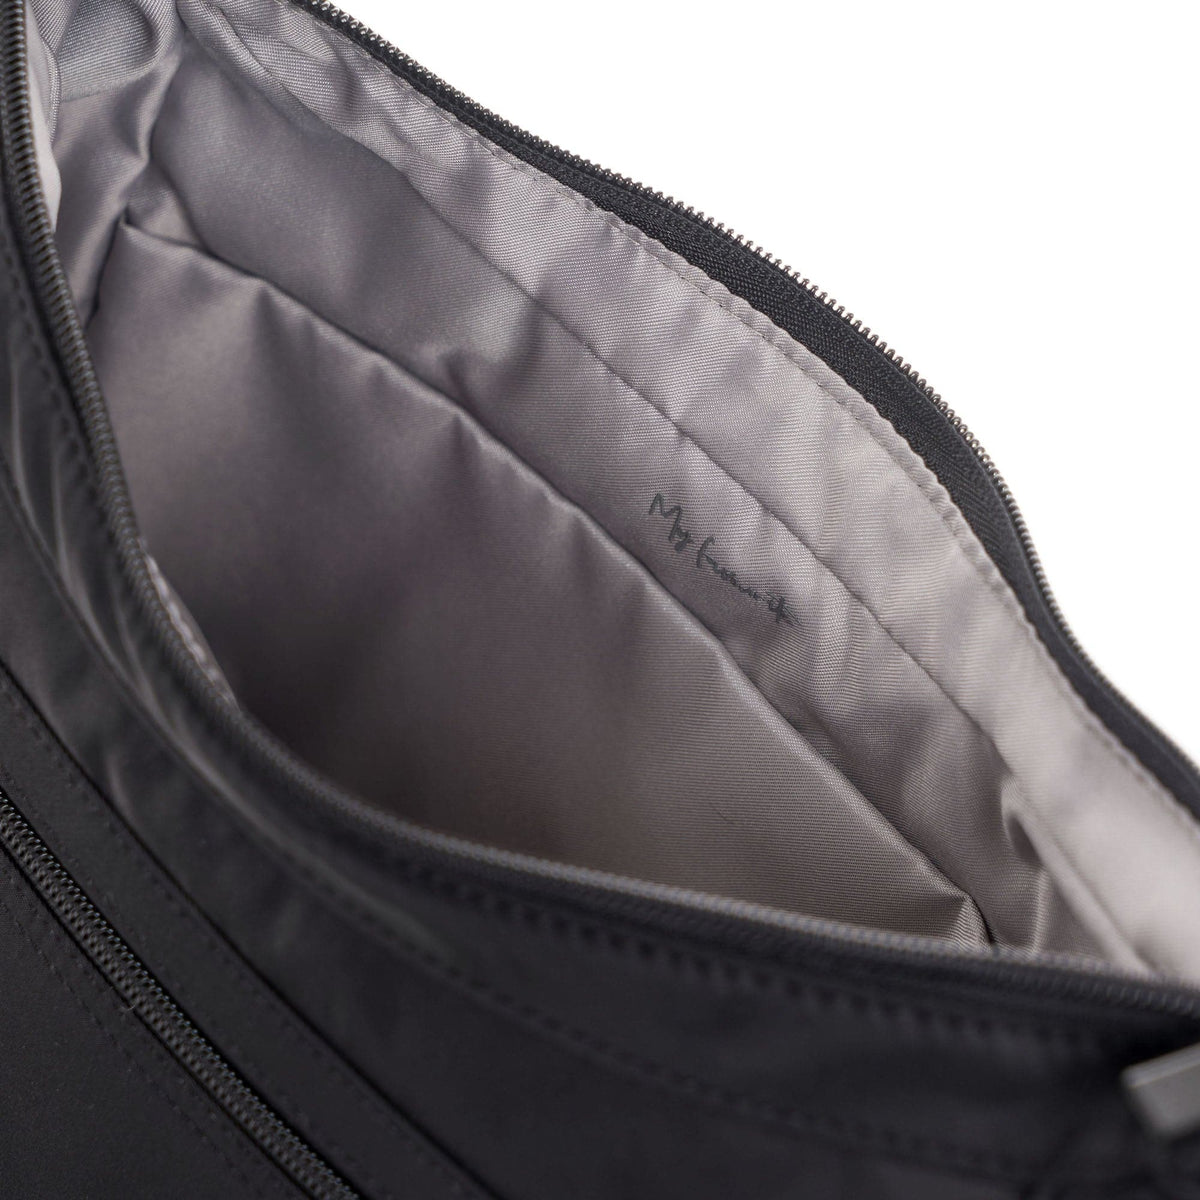 Hedgren Harper's RFID Shoulder Bag